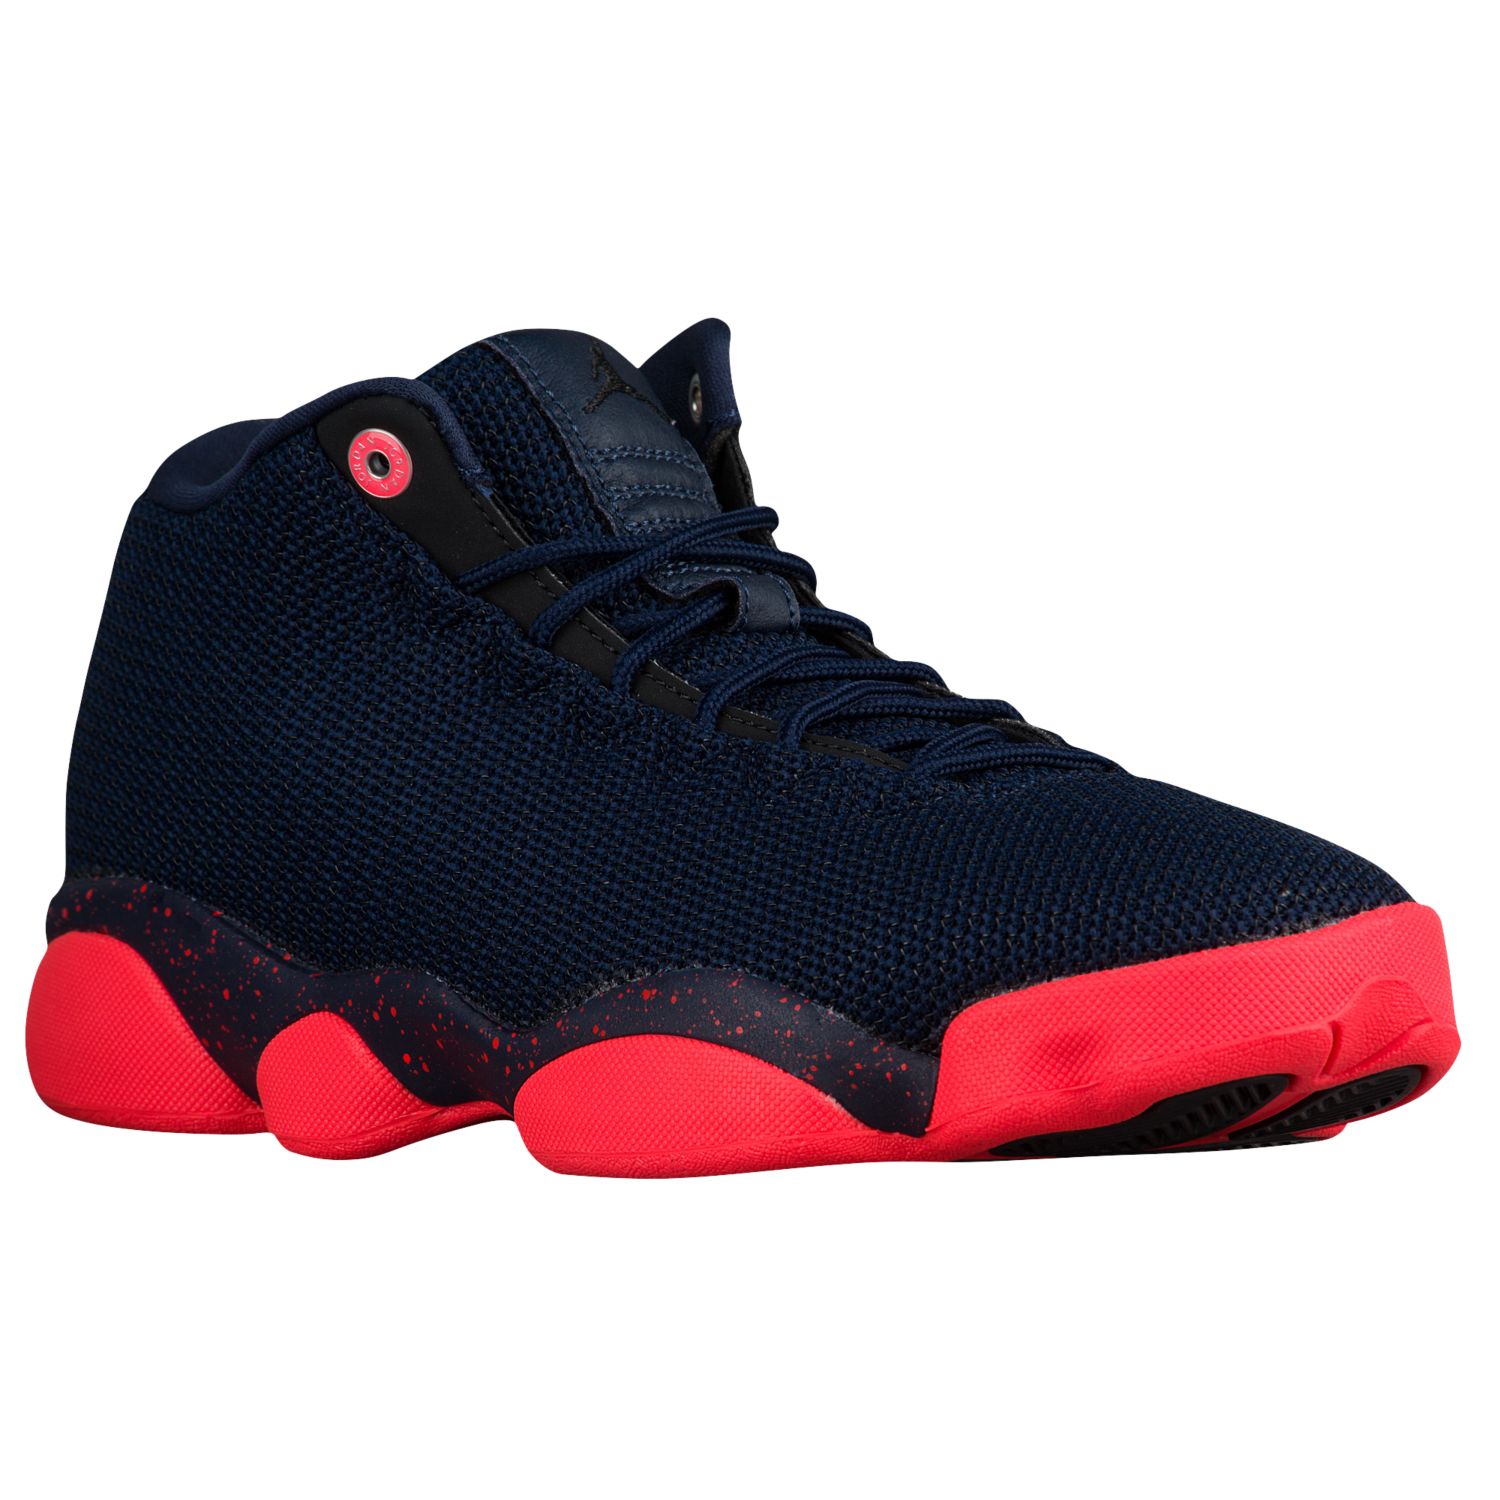 Men's Jordan Horizon LS Sneakers $79.99 